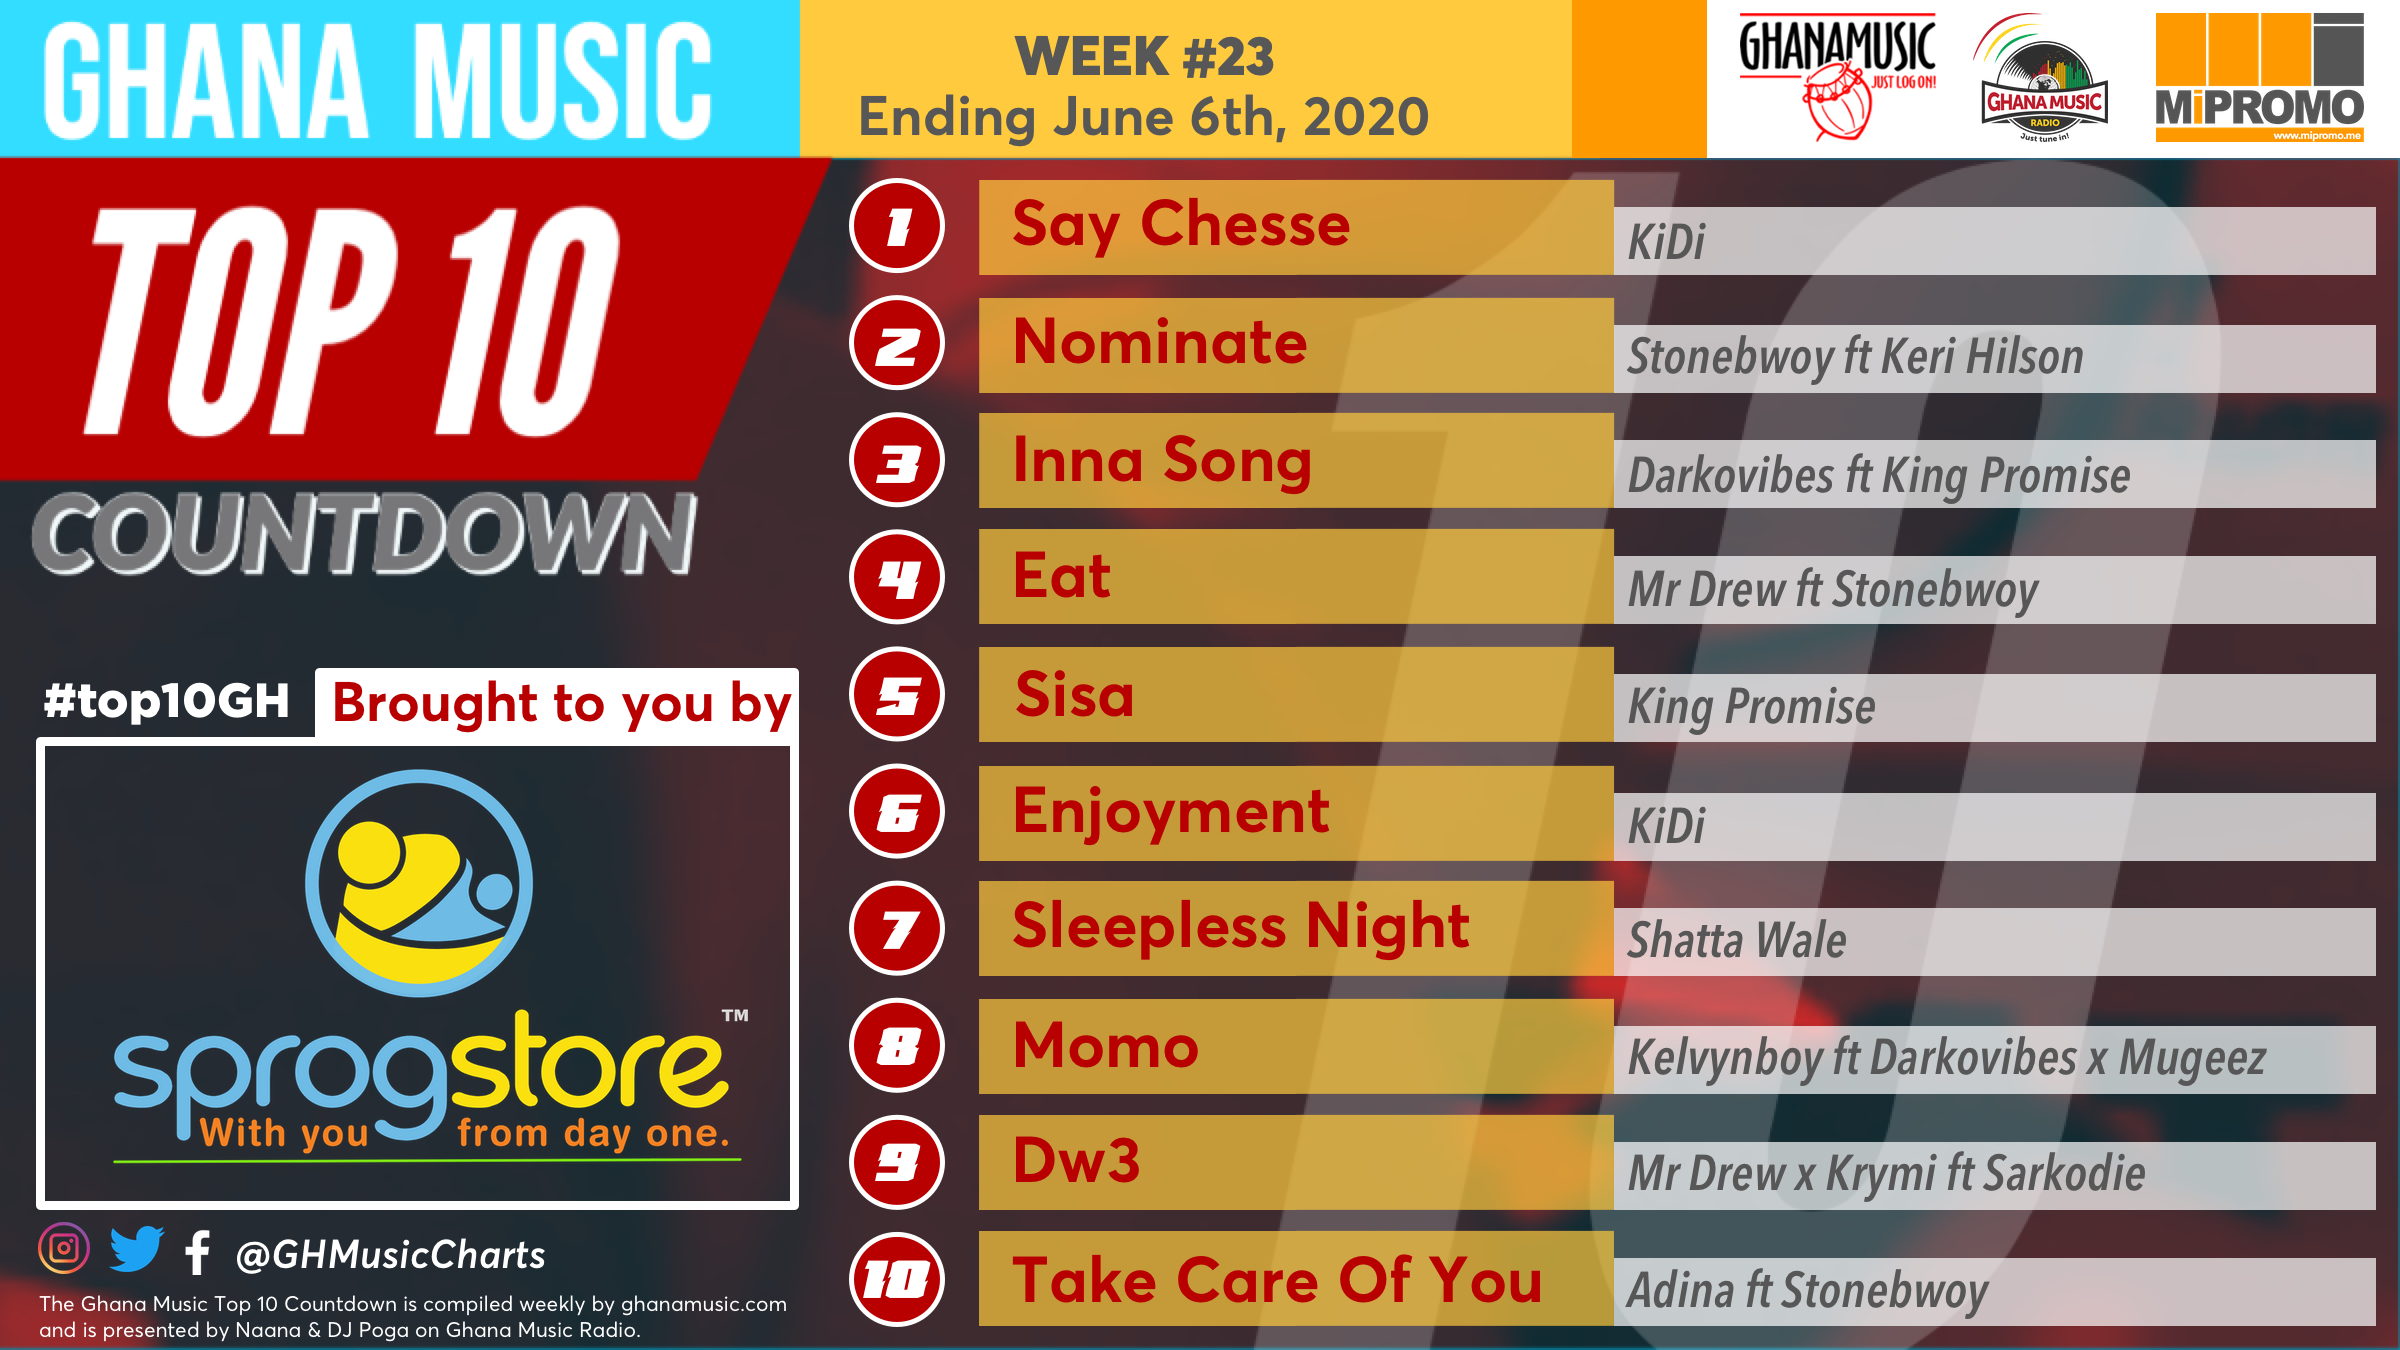 2020 Week 23: Ghana Music Top 10 Countdown